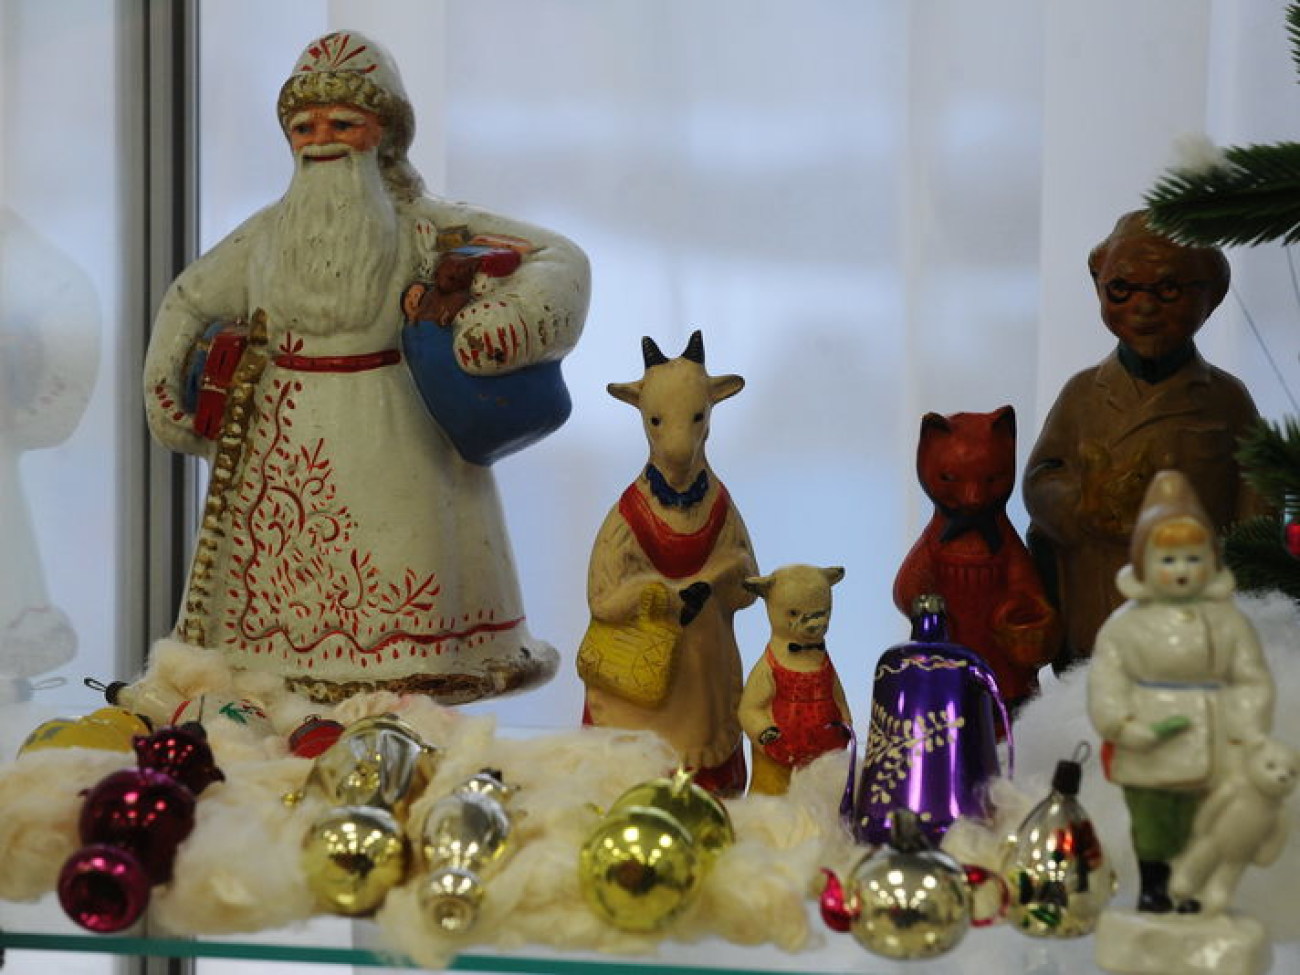 В Киеве можно увидеть авторские елочные игрушки, 8 декабря 2012г.